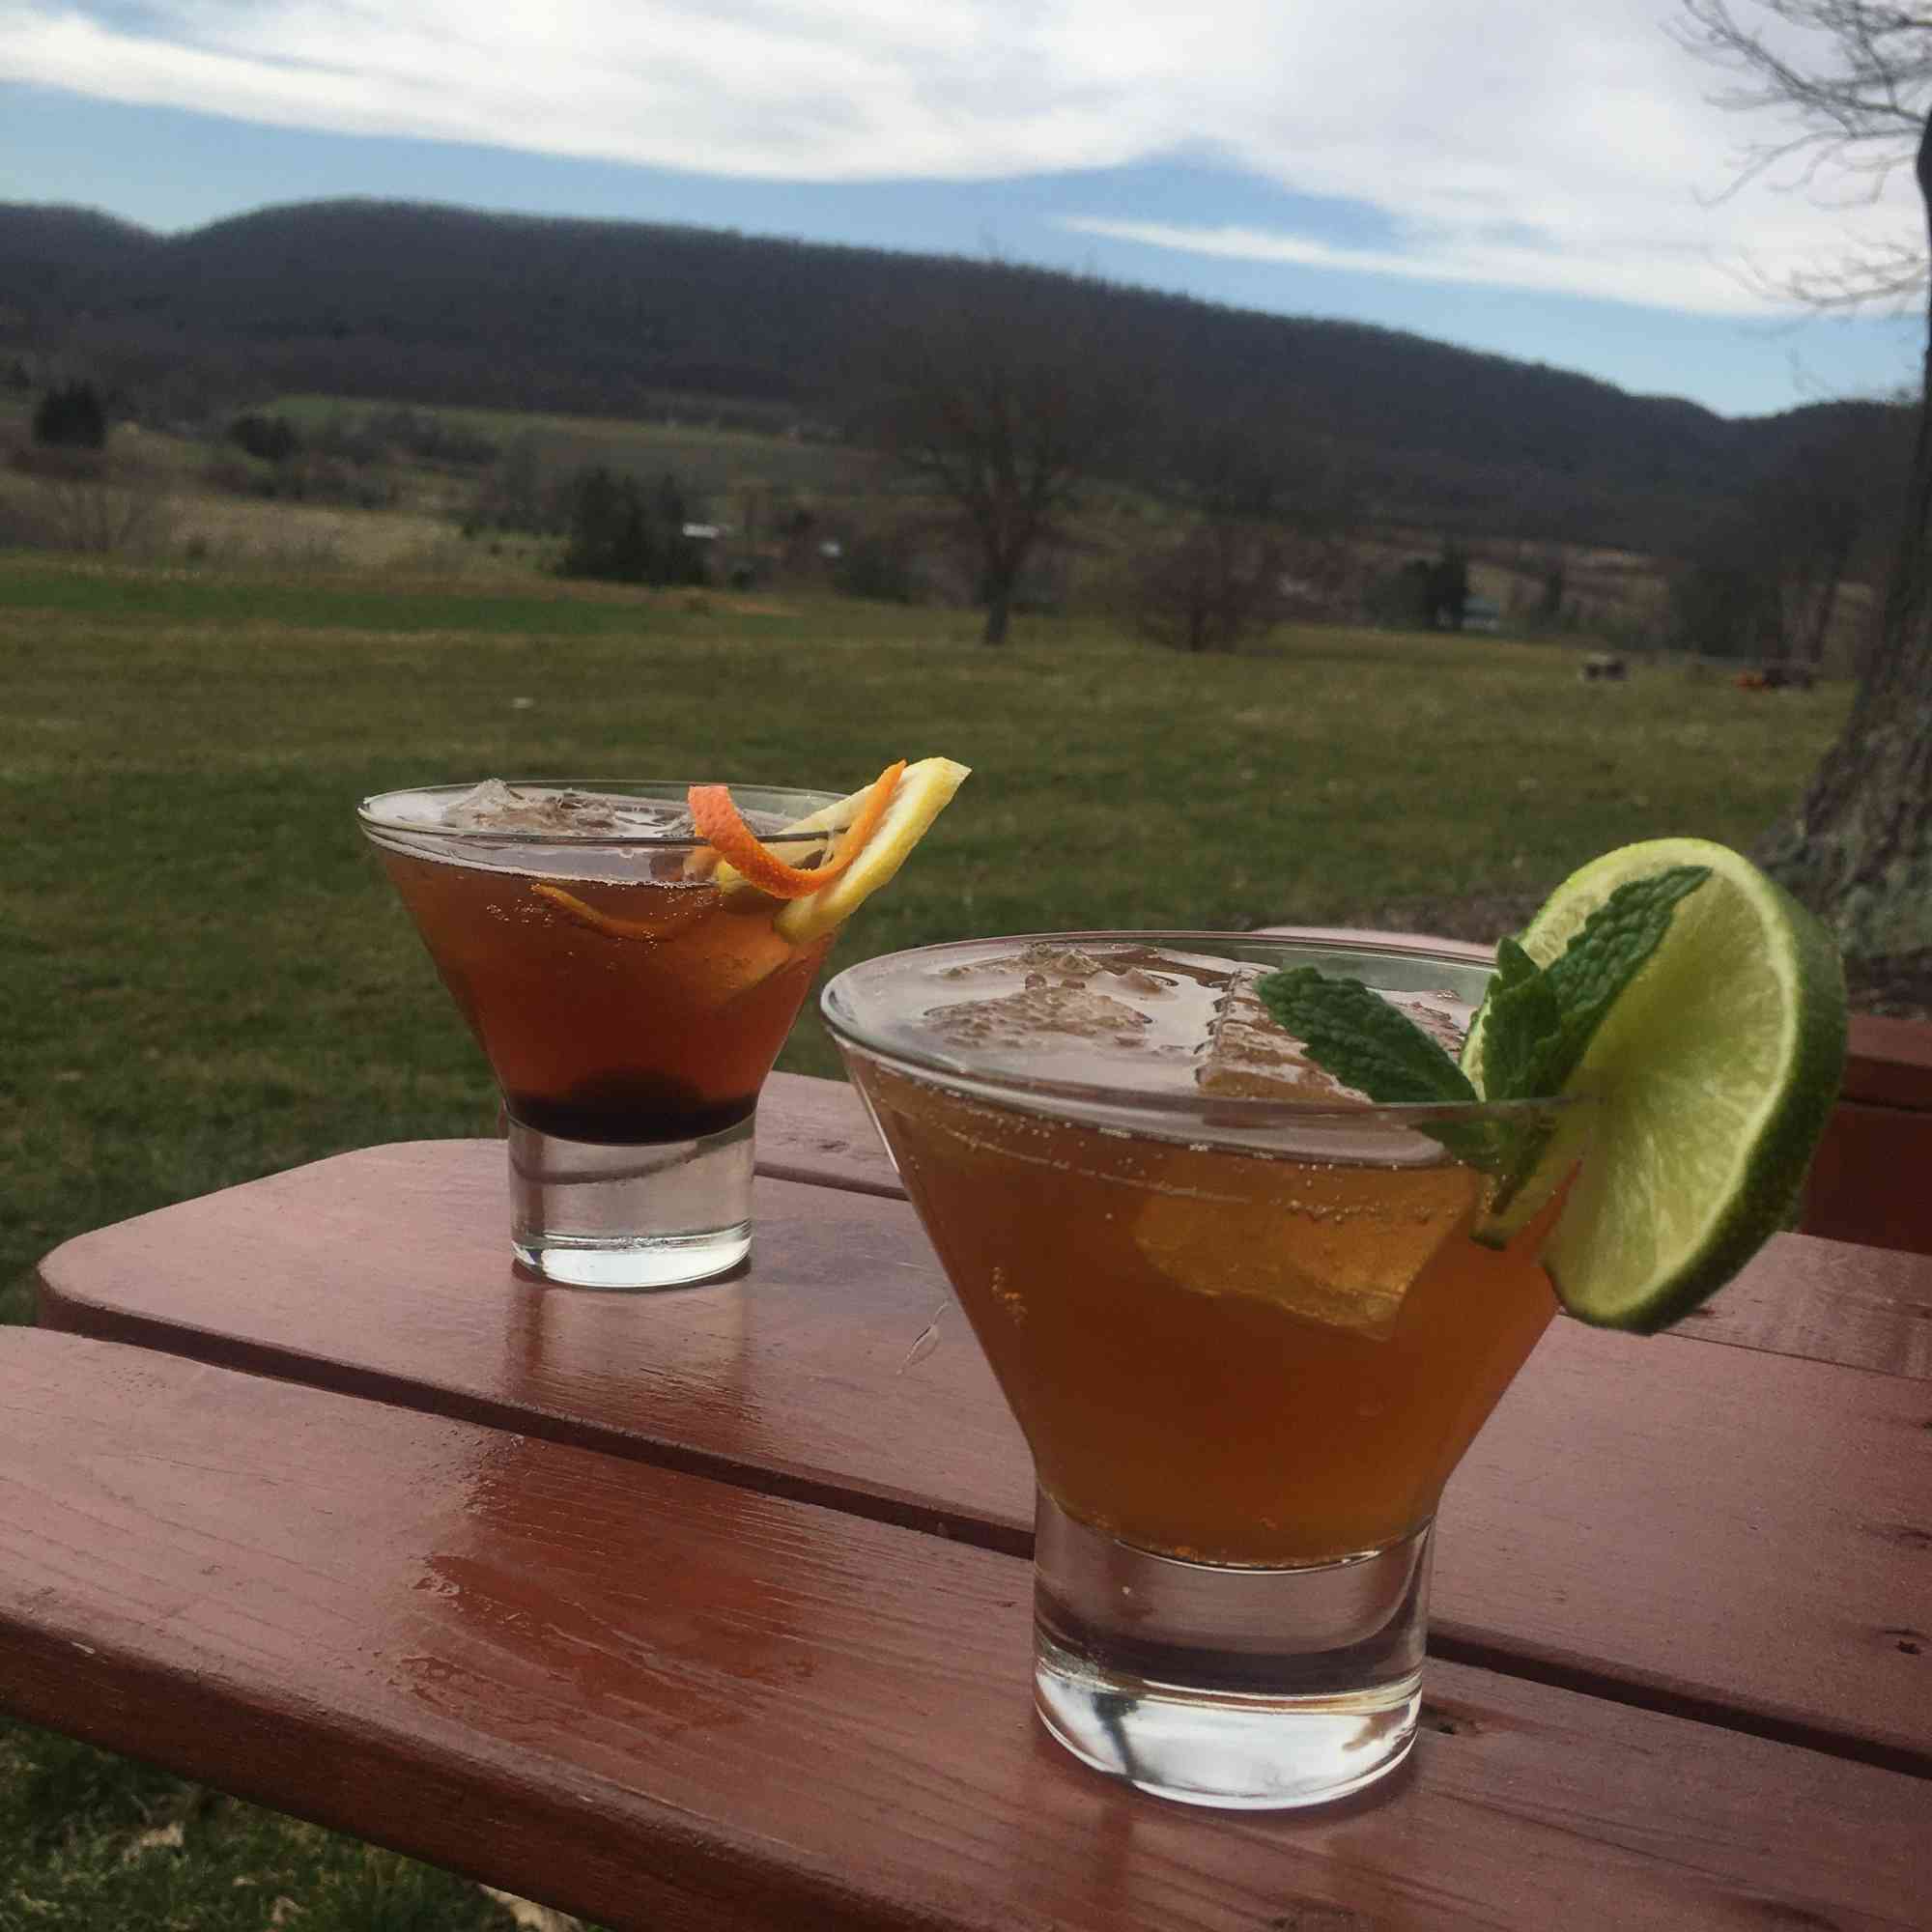 Lesley Kistner cocktails on the back lawn